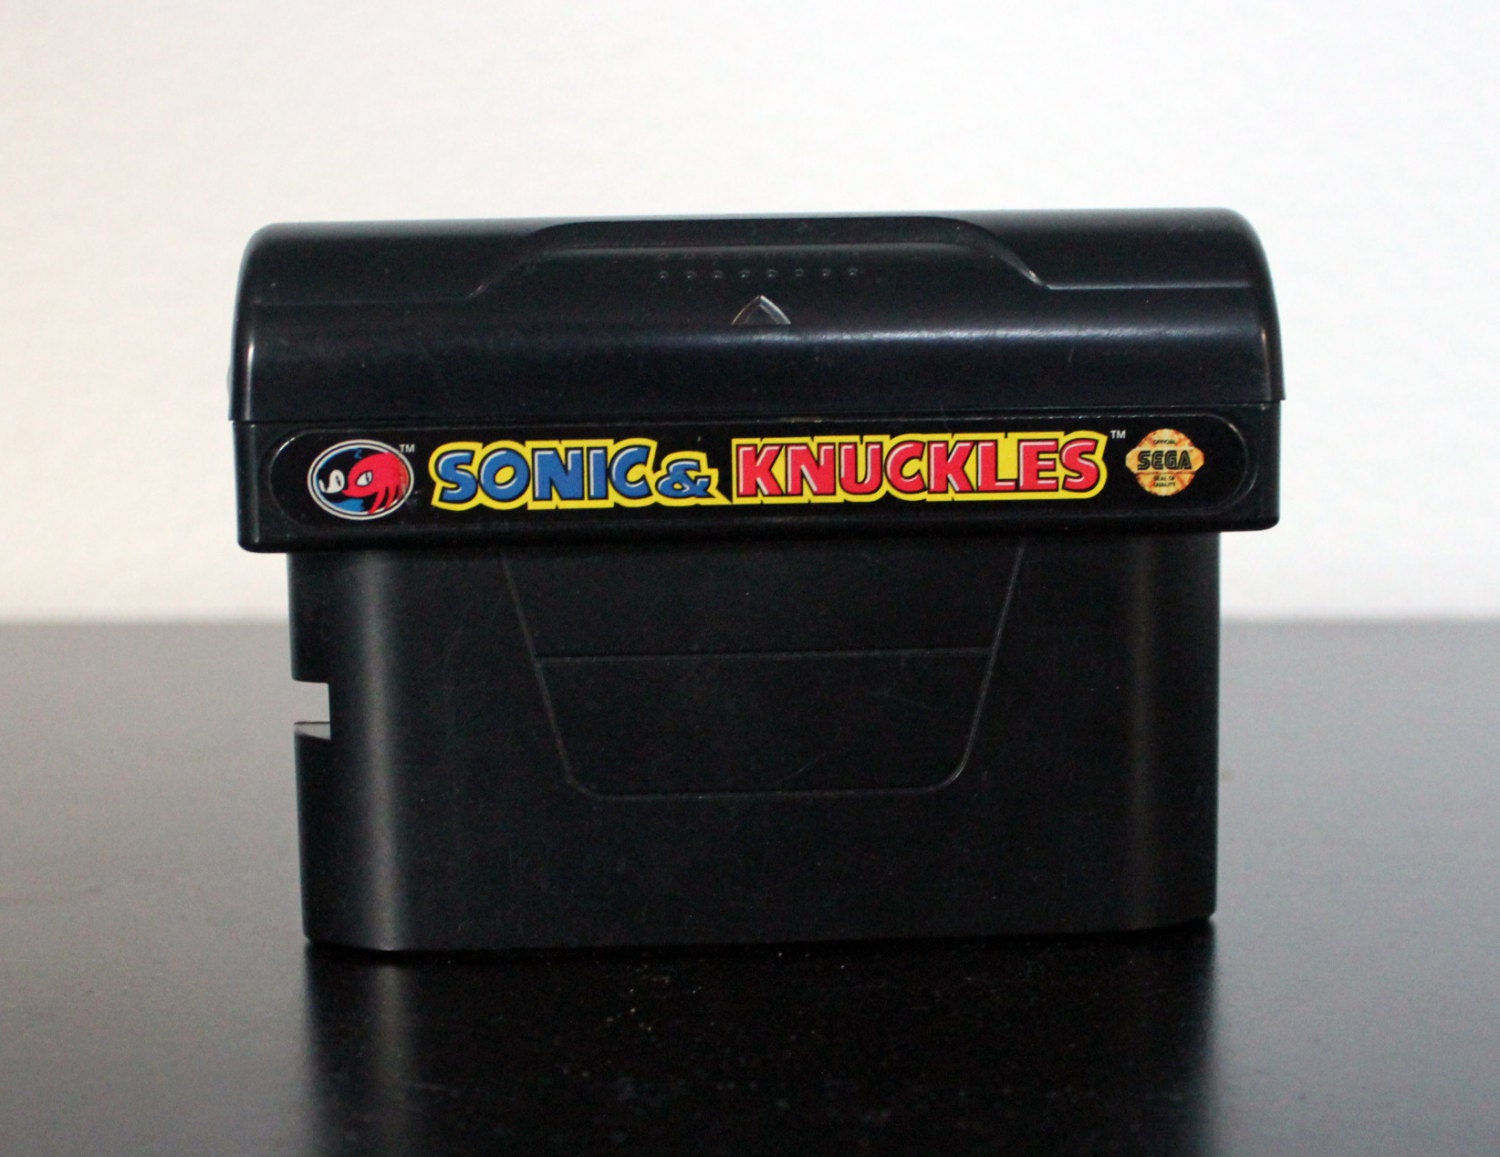 Sonic Classic Heroes Sega Genesis Repro Game Cart -  Sweden